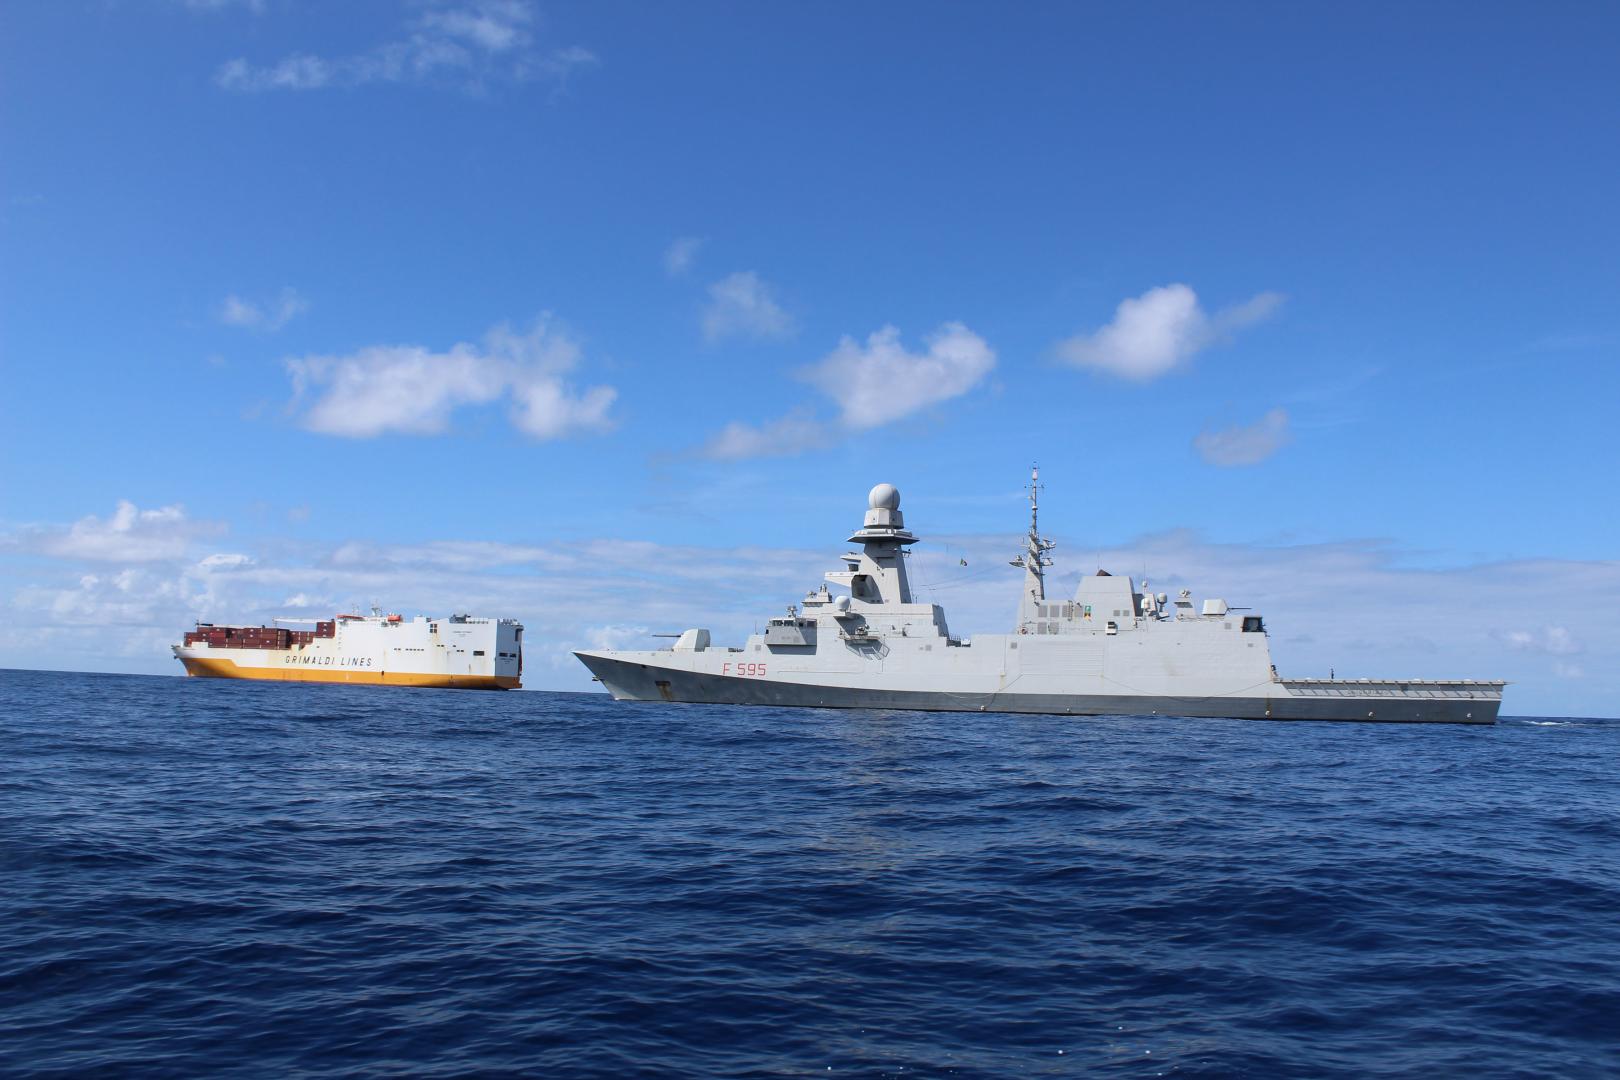 Marina Militare e Guardia Costiera in sinergia con Confitarma